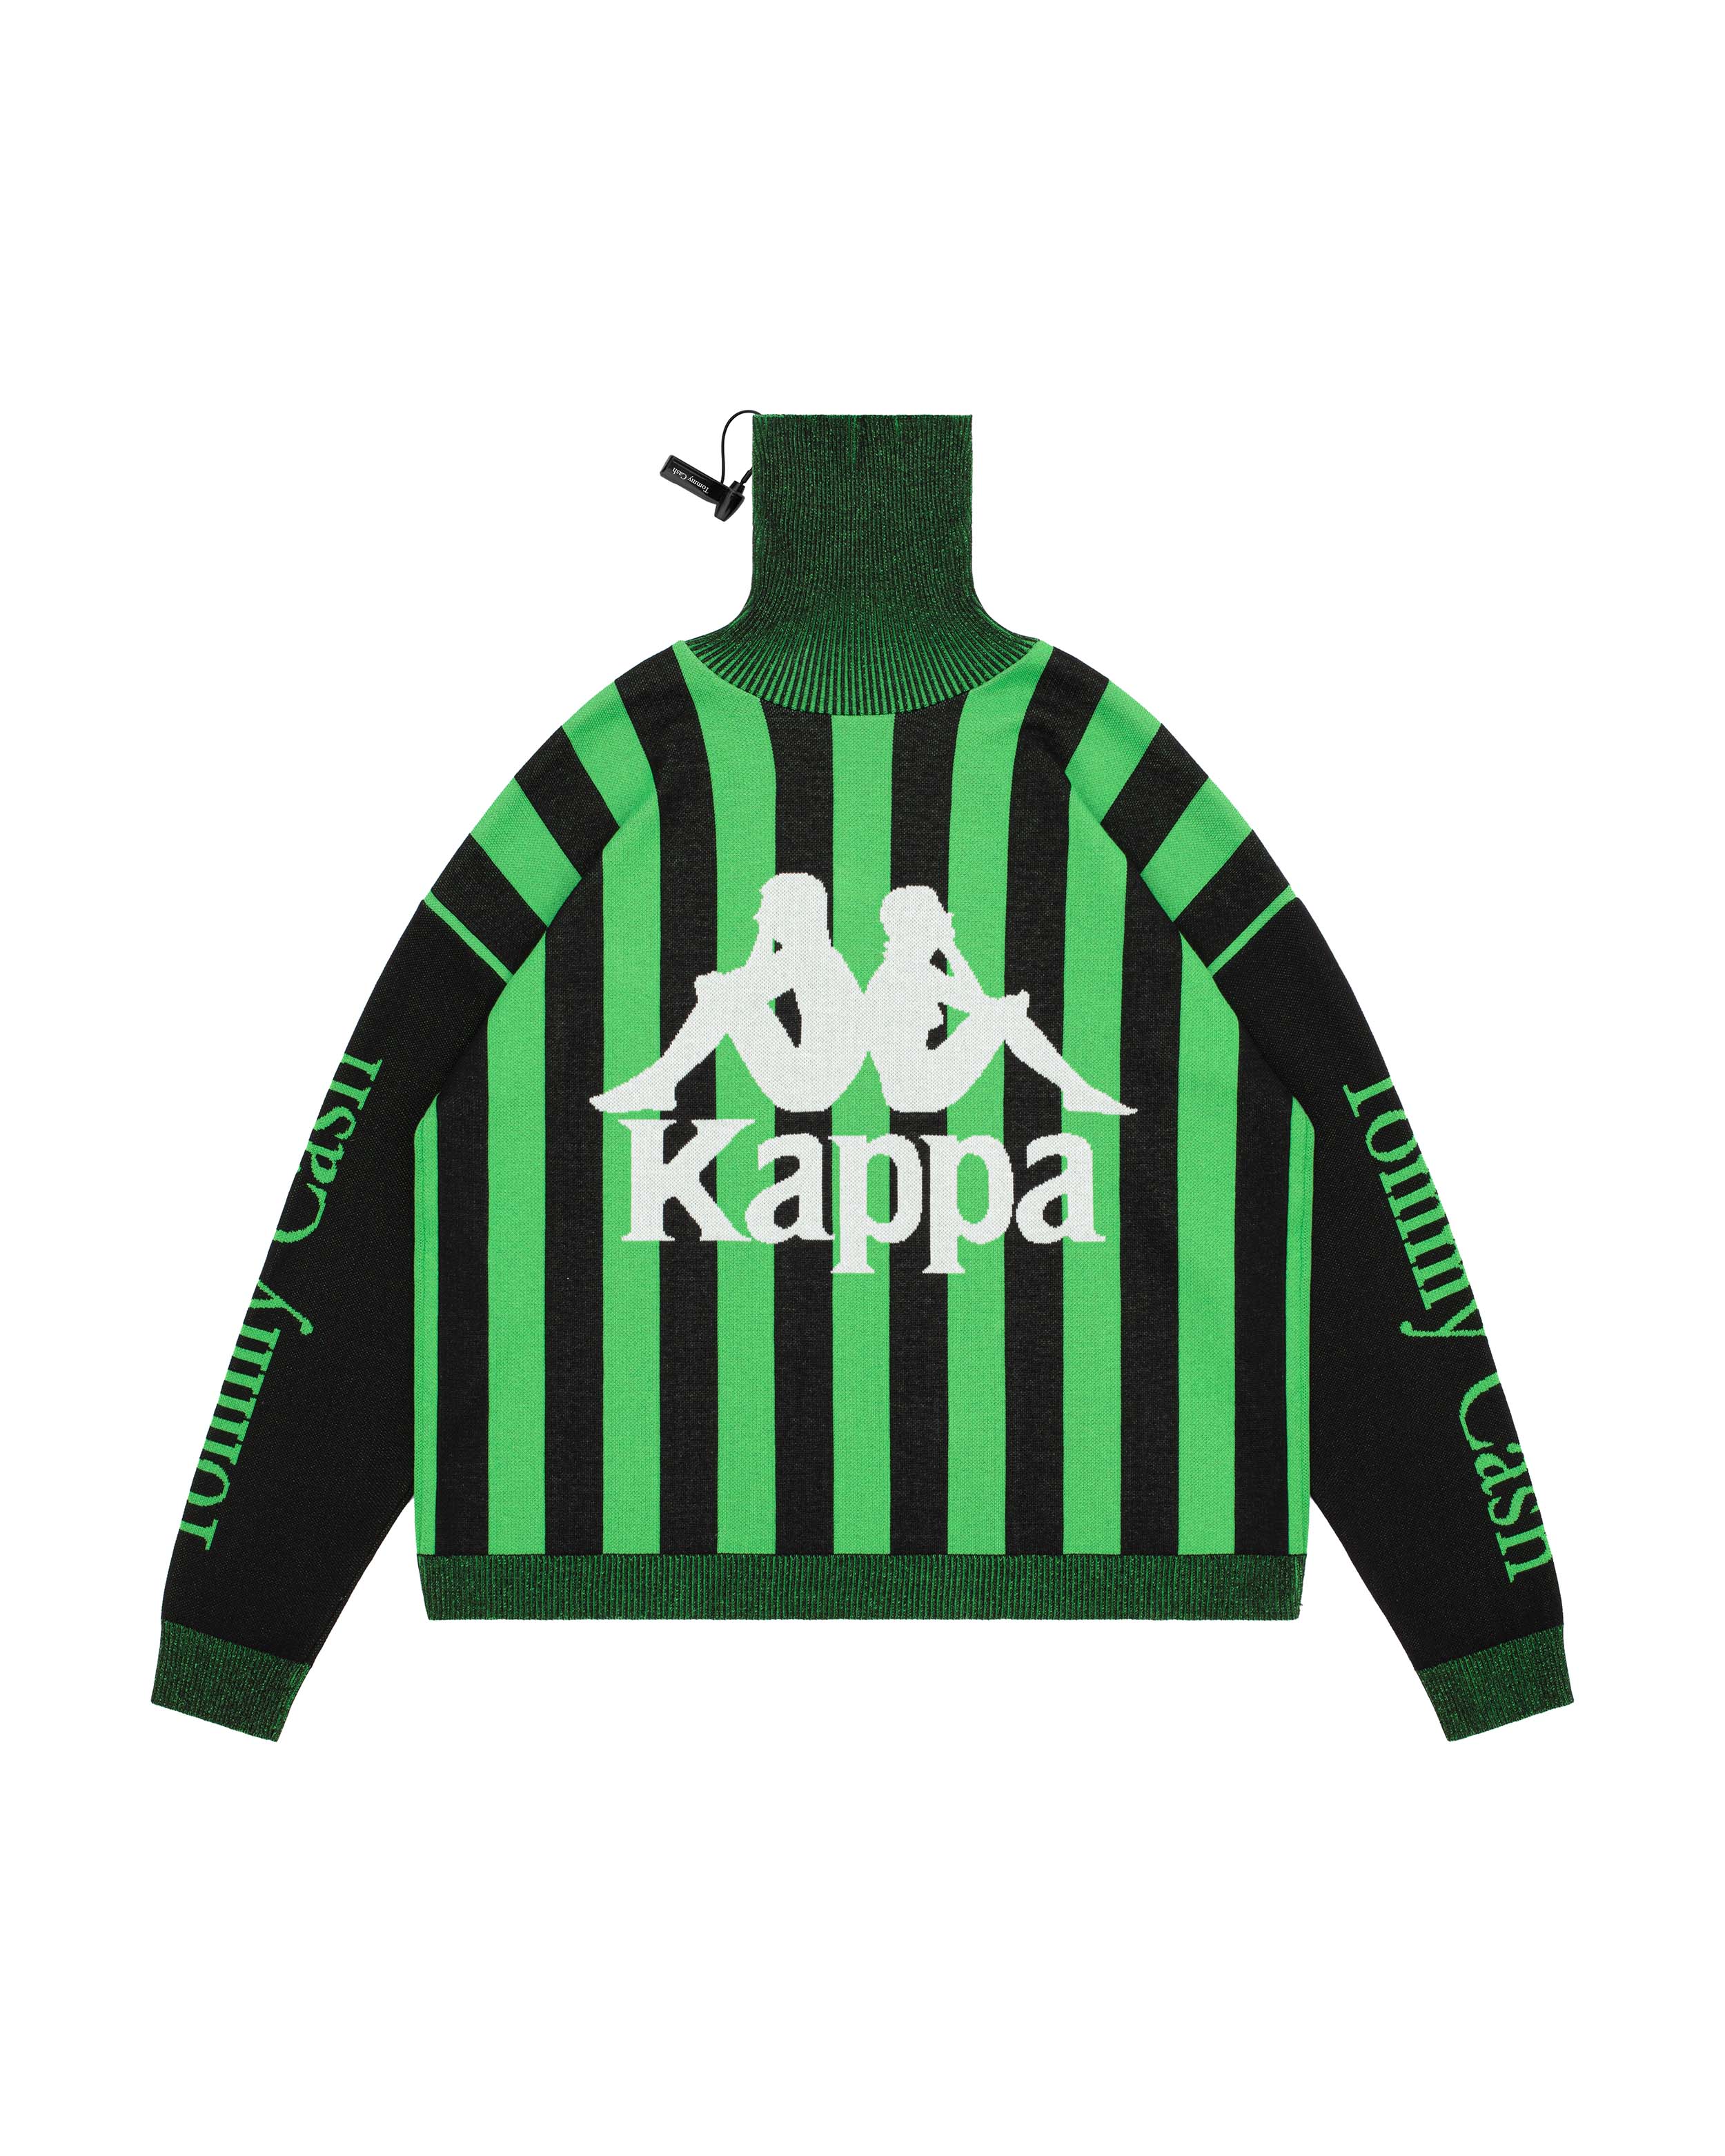 Gedwongen vasthoudend compleet Kappa X Tommy Cash Turtle Neck Sweater – TOMMY CASH SHOP